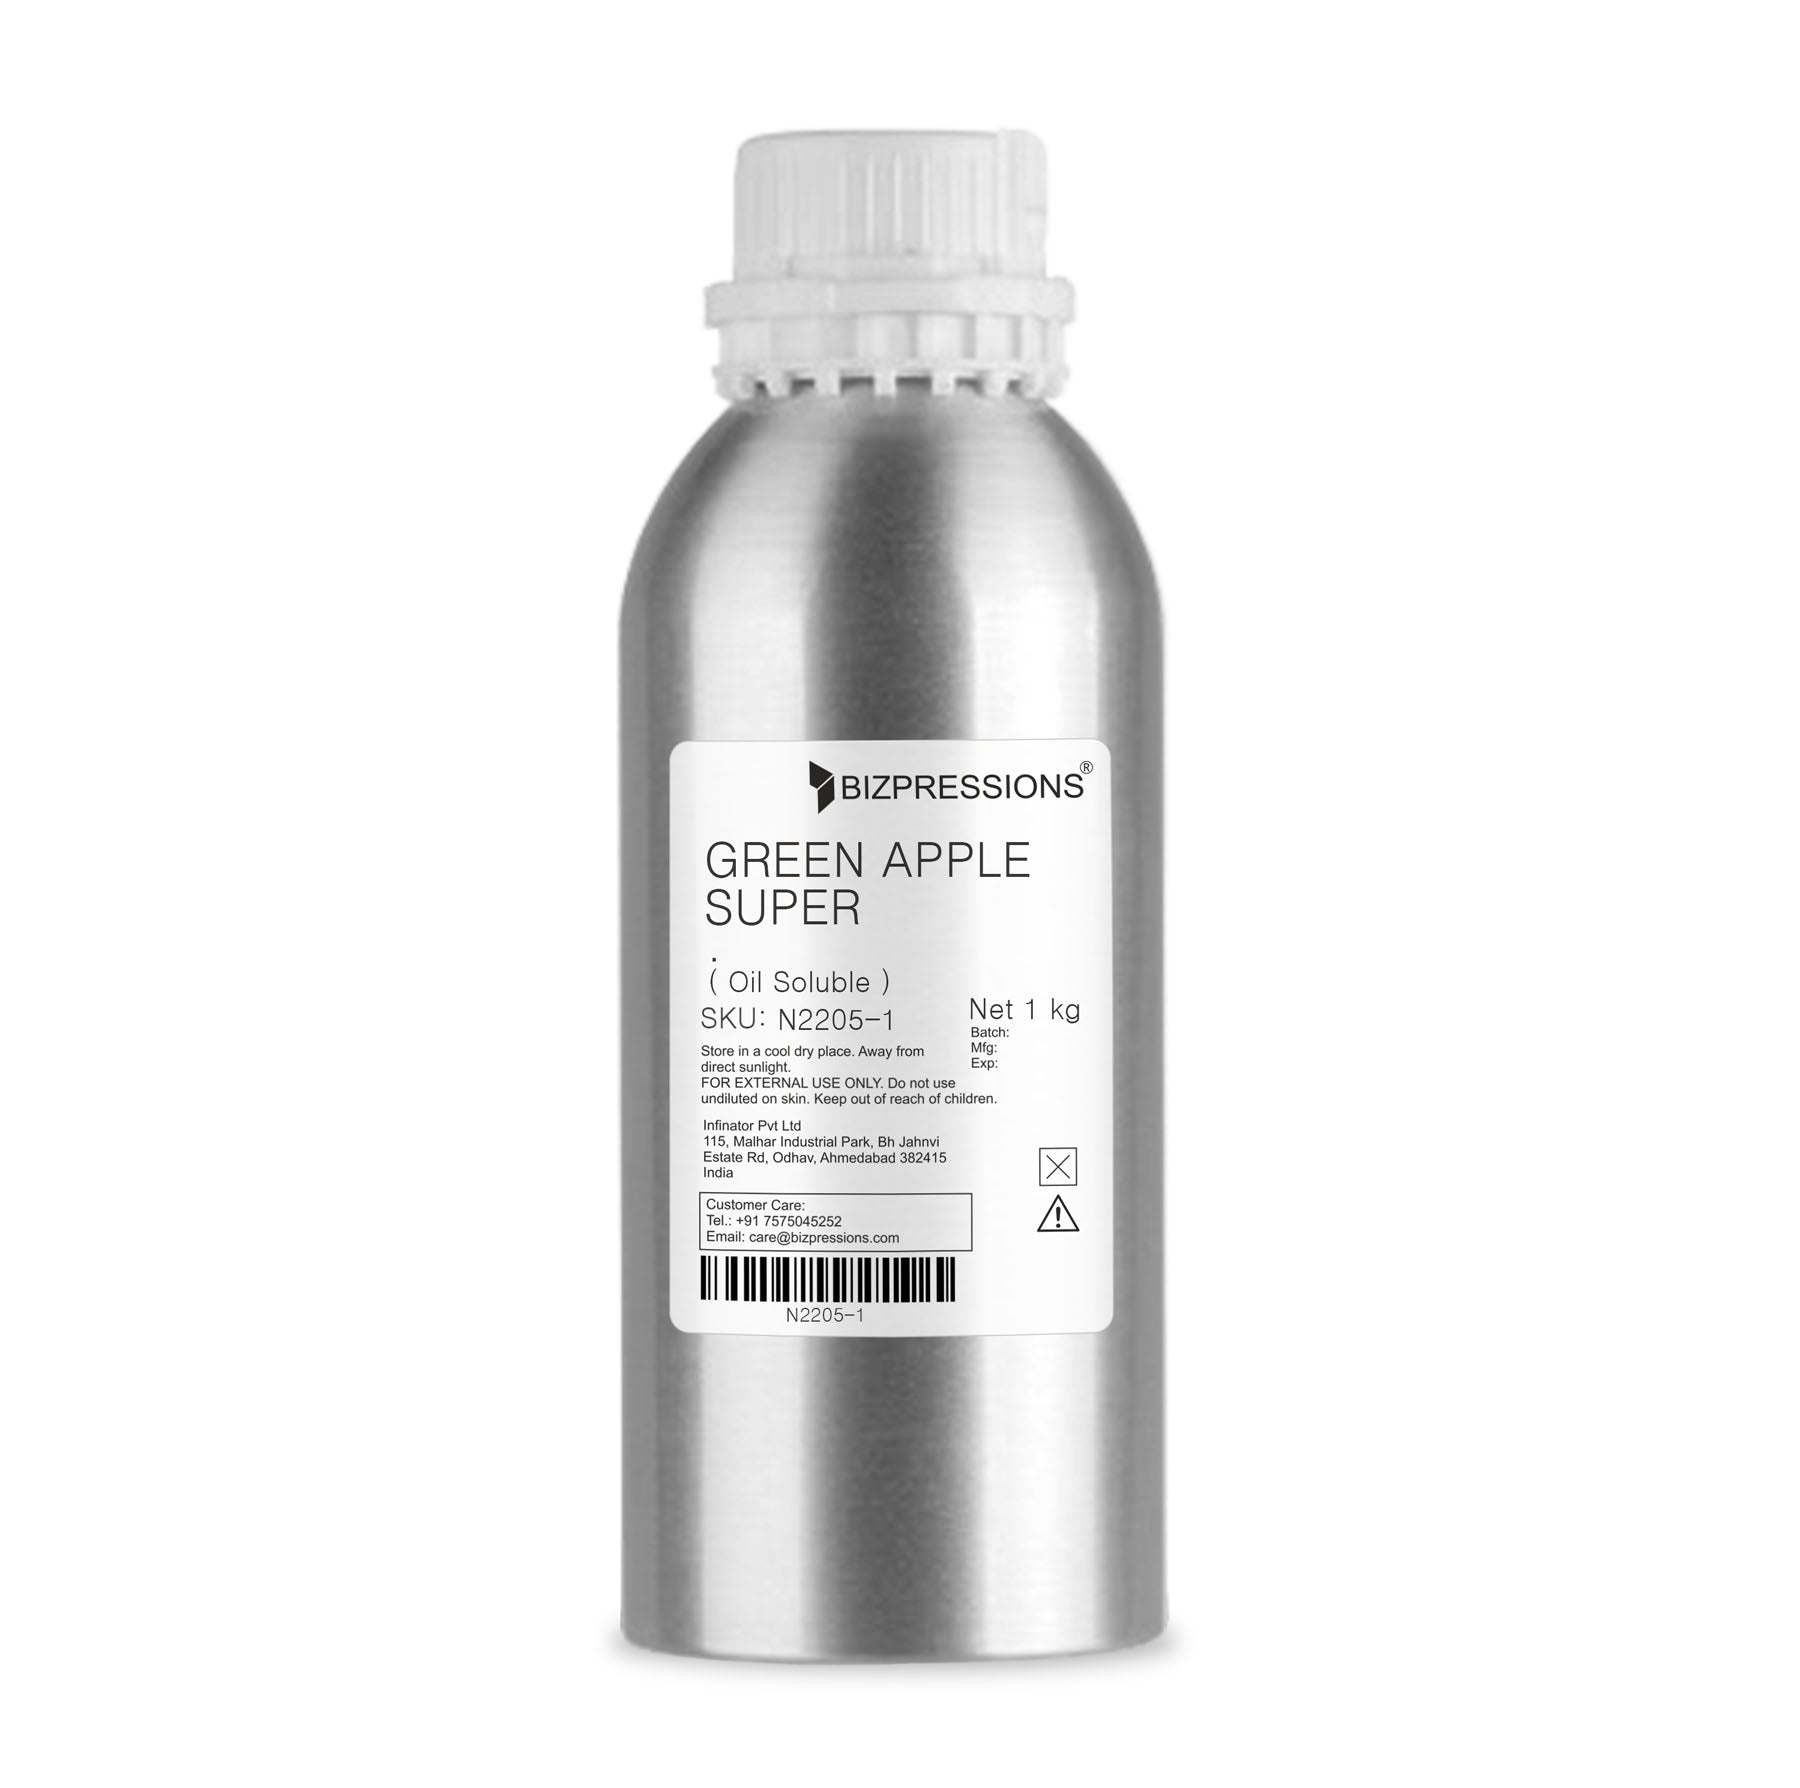 GREEN APPLE SUPER - Fragrance ( Oil Soluble ) - 1 kg